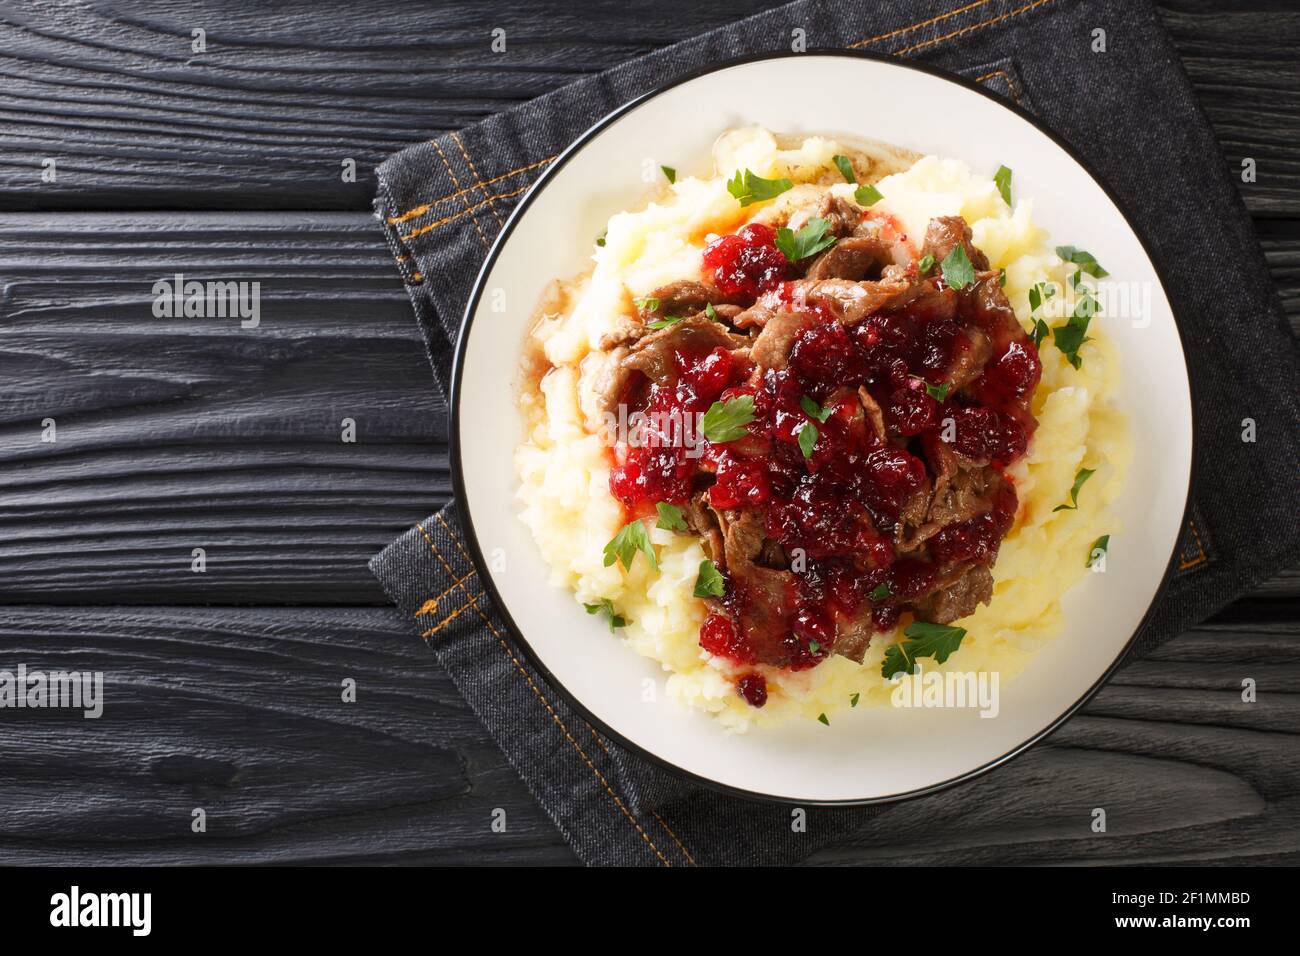 Cuisine de Laponie Poronkaristys venison avec purée de pommes de terre et sauce aux baies de lingonyre dans une assiette sur la table. Vue horizontale dessus Banque D'Images